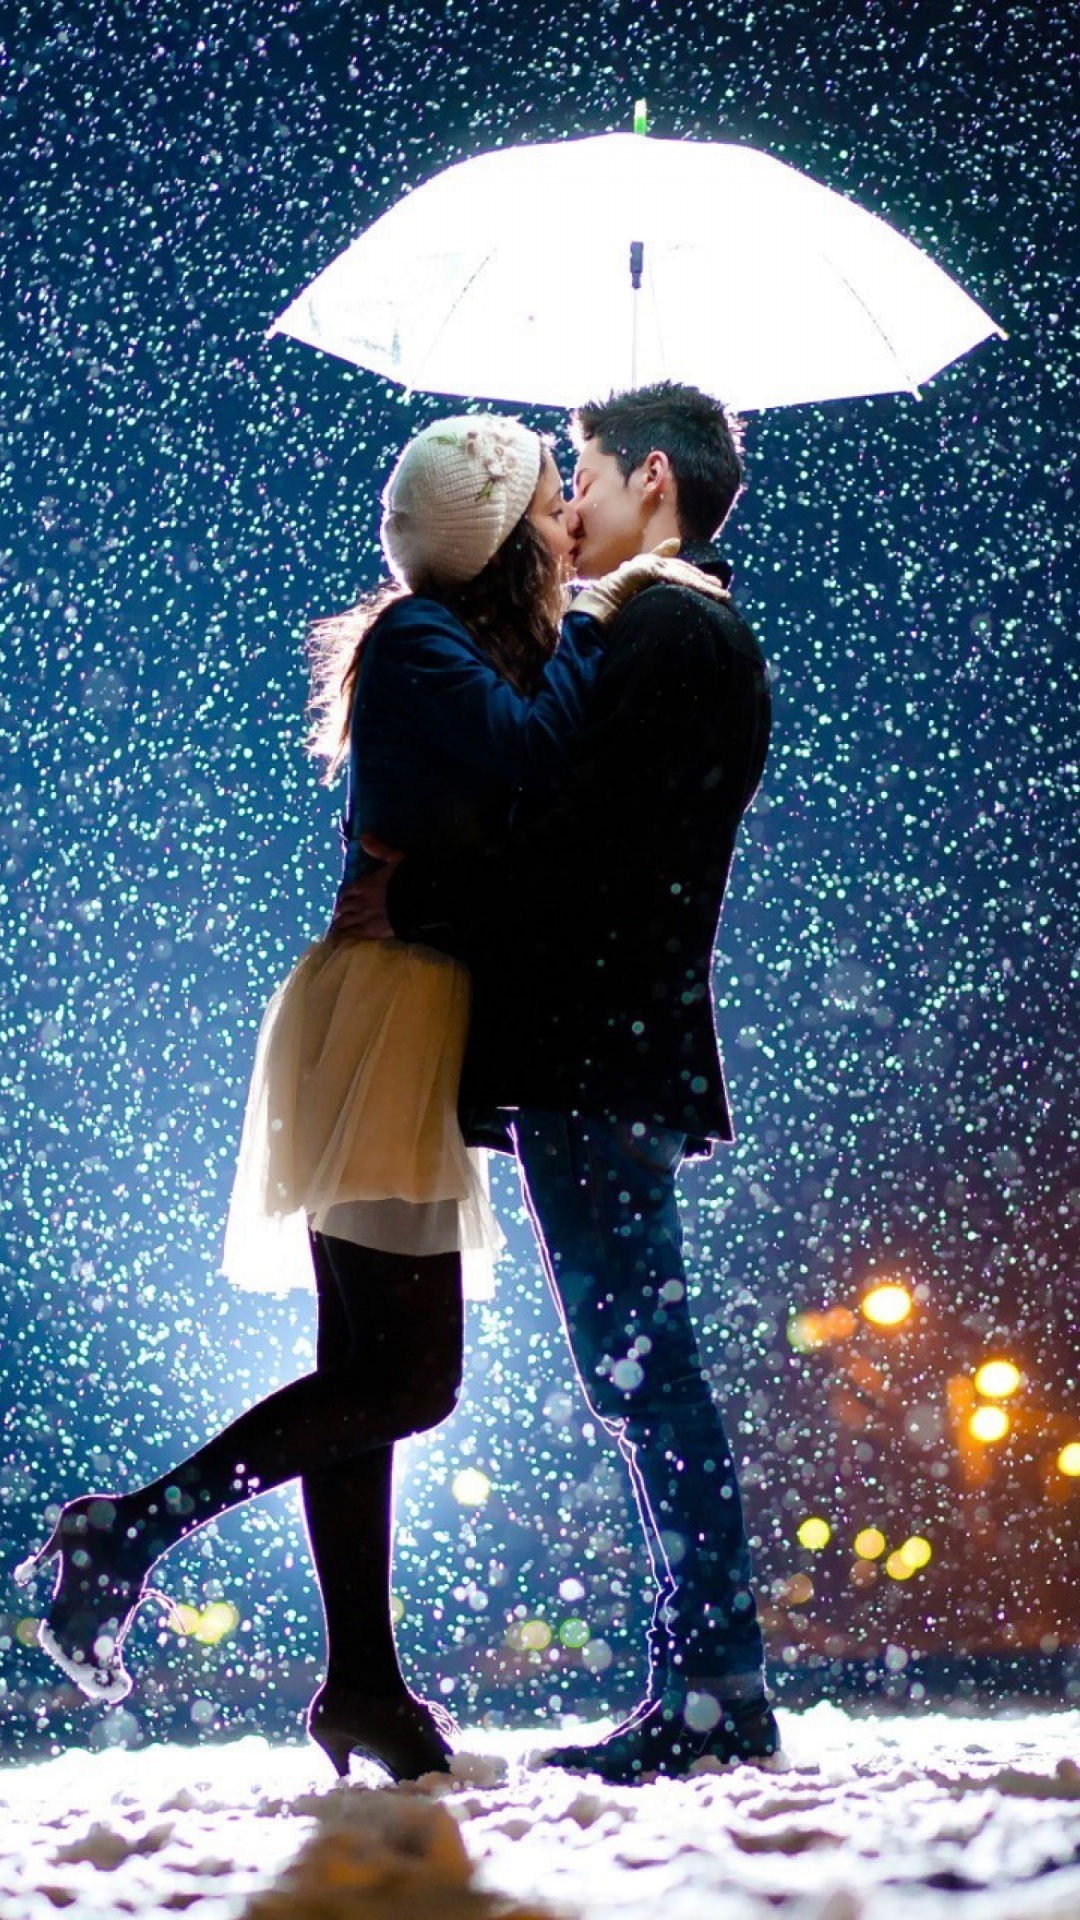 Romantik, Kuss, Ehepaar, Regenschirm, Schnee. Wallpaper in 1080x1920 Resolution